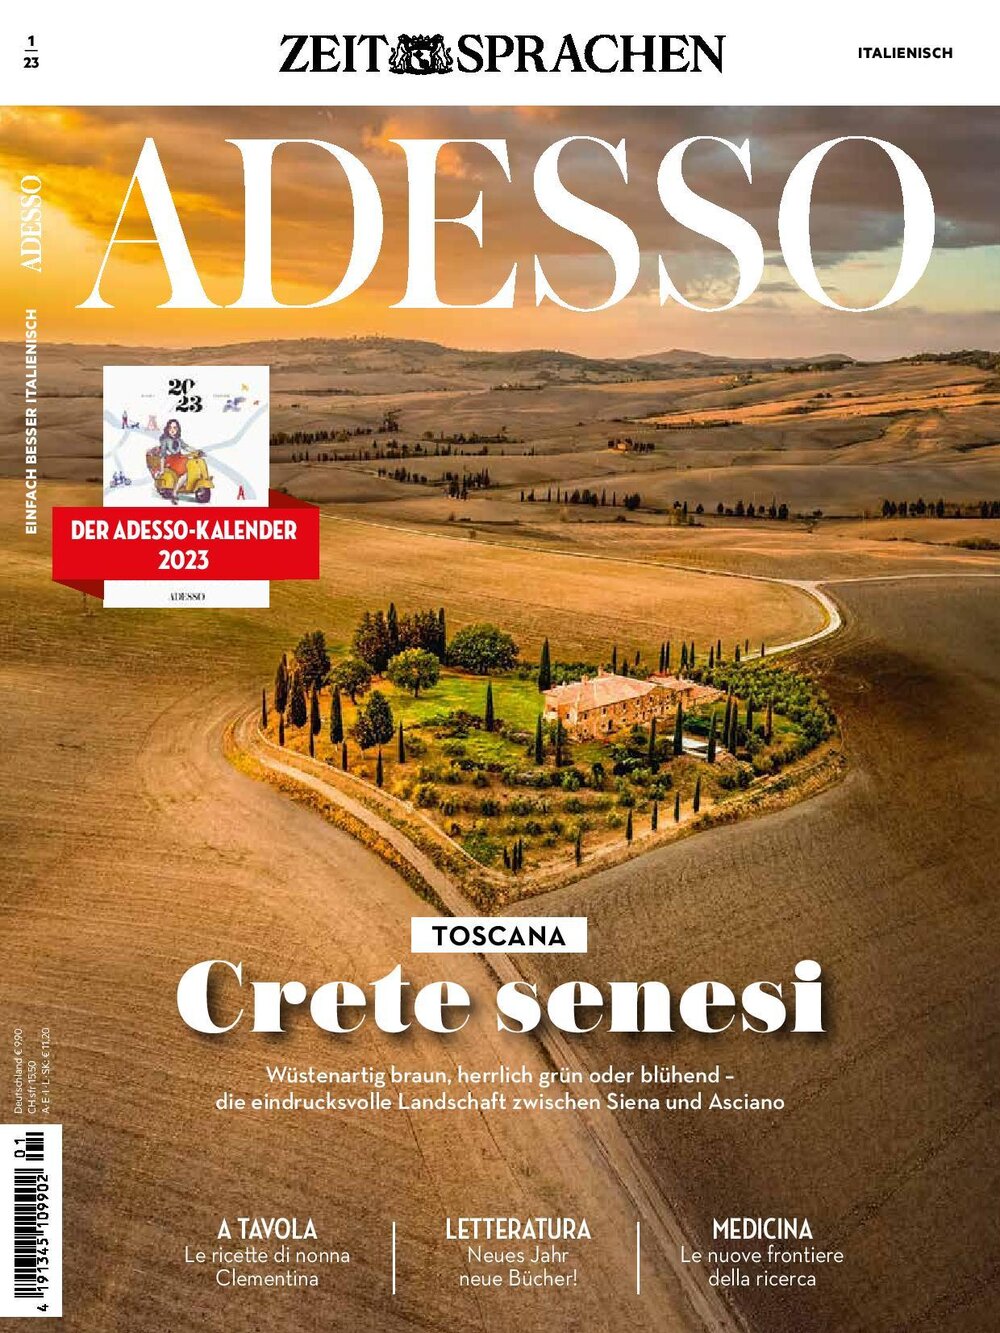 ADESSO eMagazine 01/2023